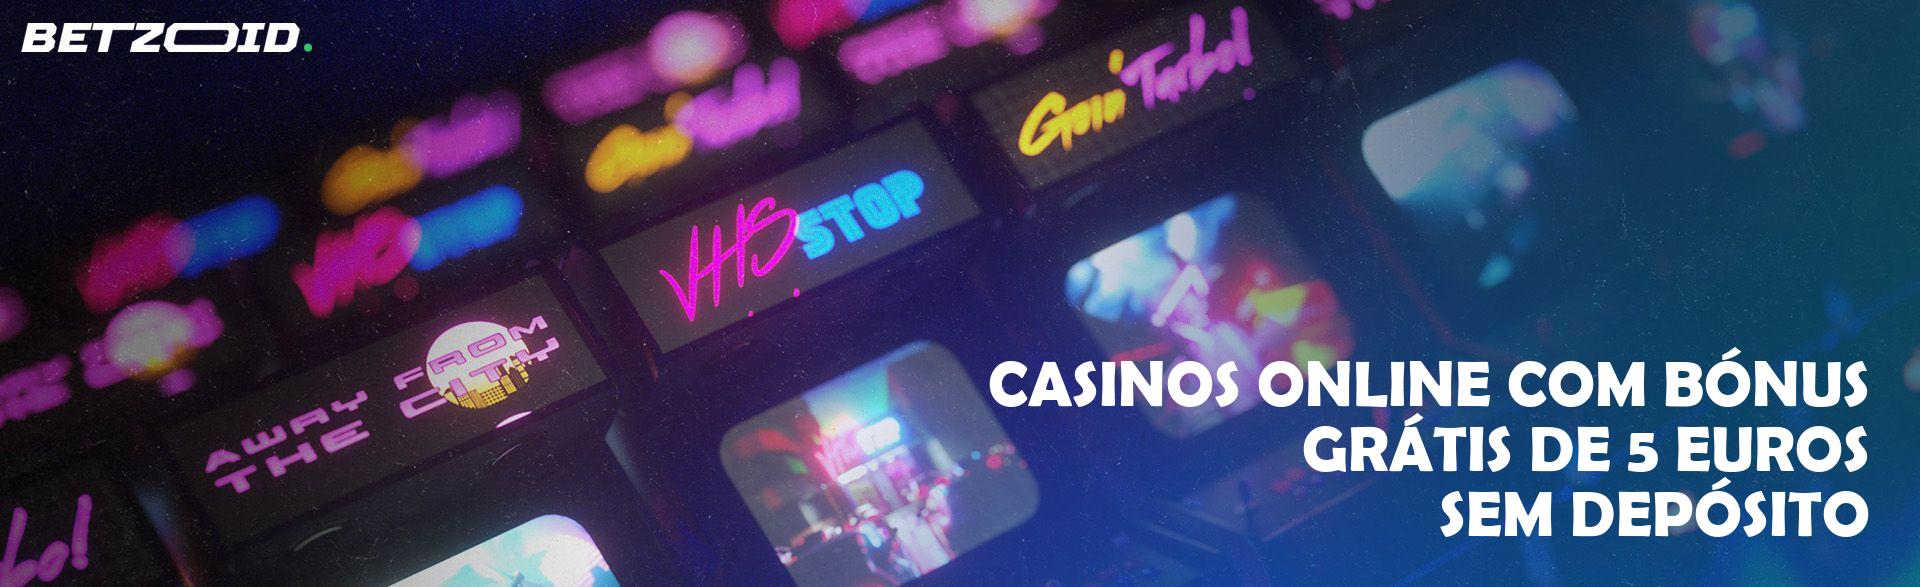 Casinos Online com Bónus Grátis de 5 Euros sem Depósito.